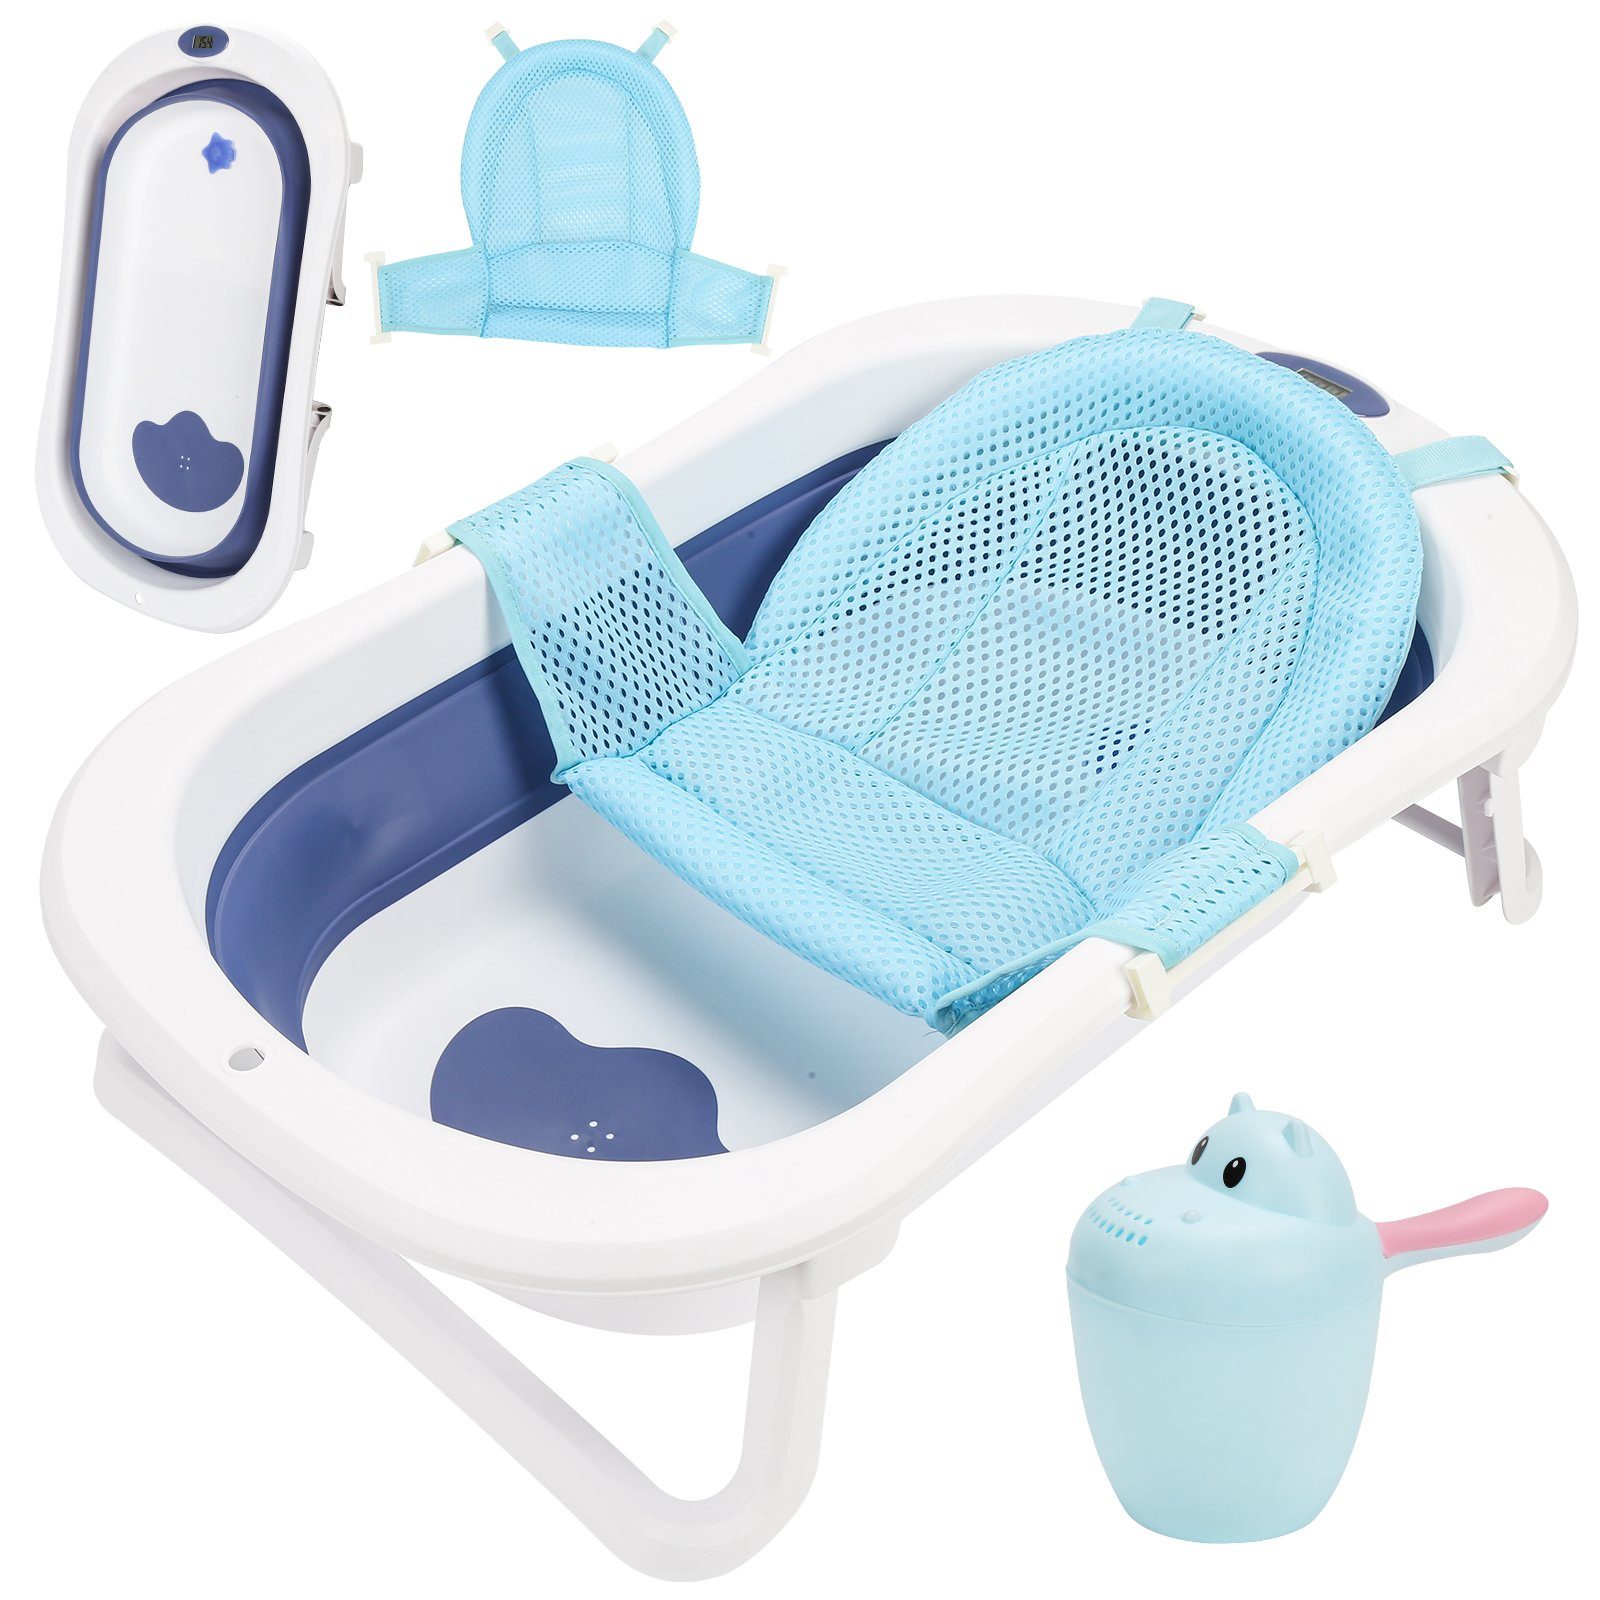 Blau Yakimz mit Kunststoff Wanne Ergonomische kissen Badewanne Babybadewanne Baby Faltbare